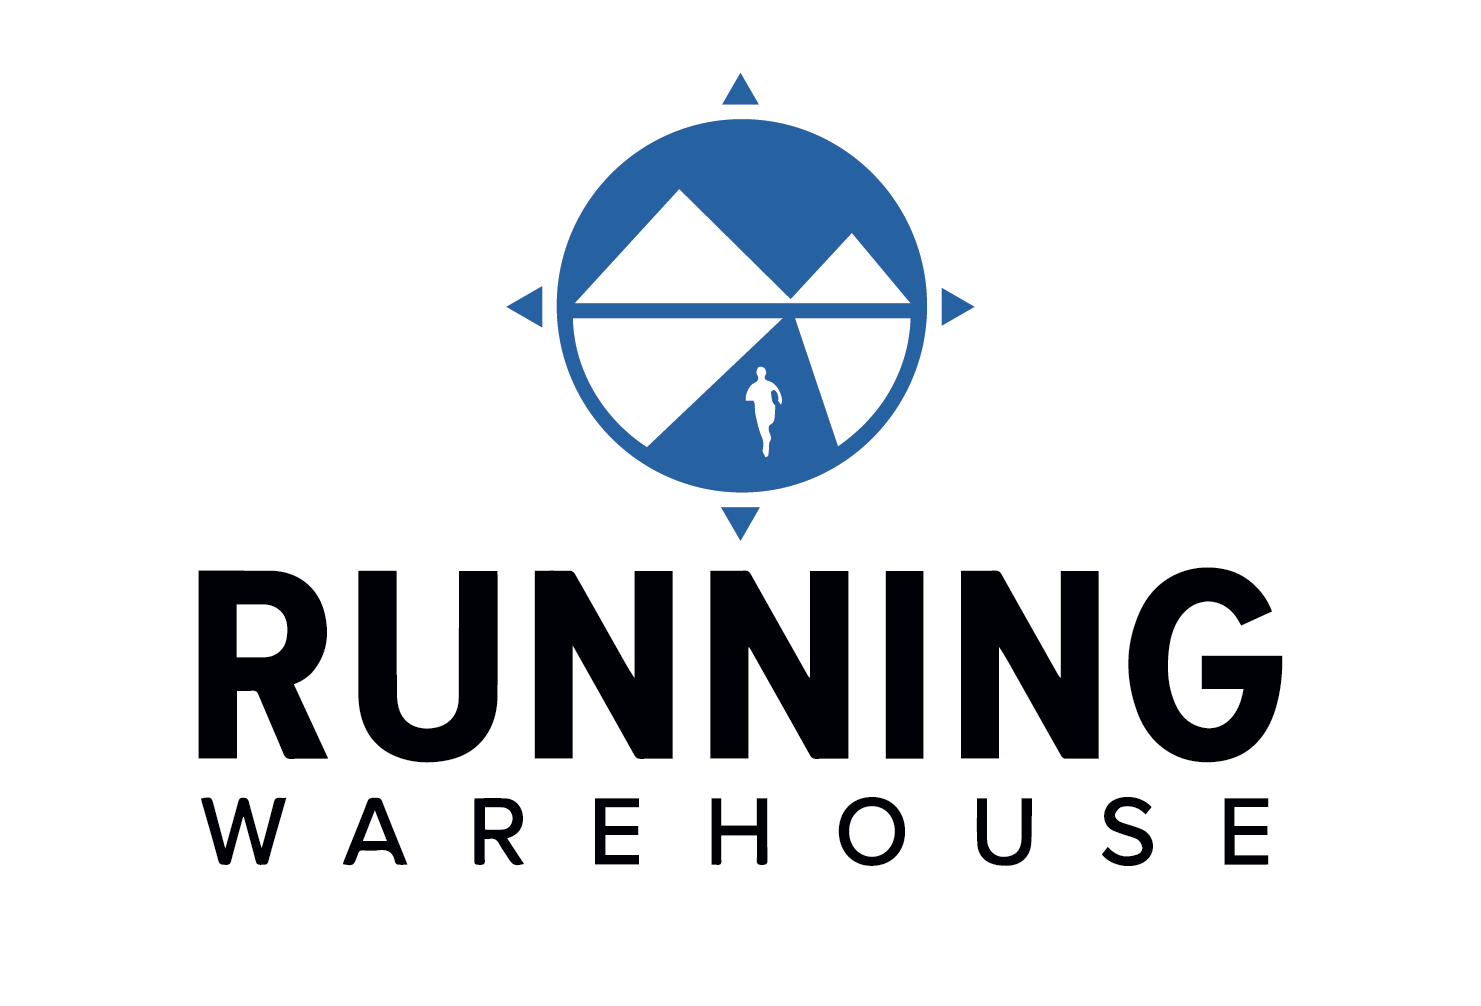 Running Warehouse